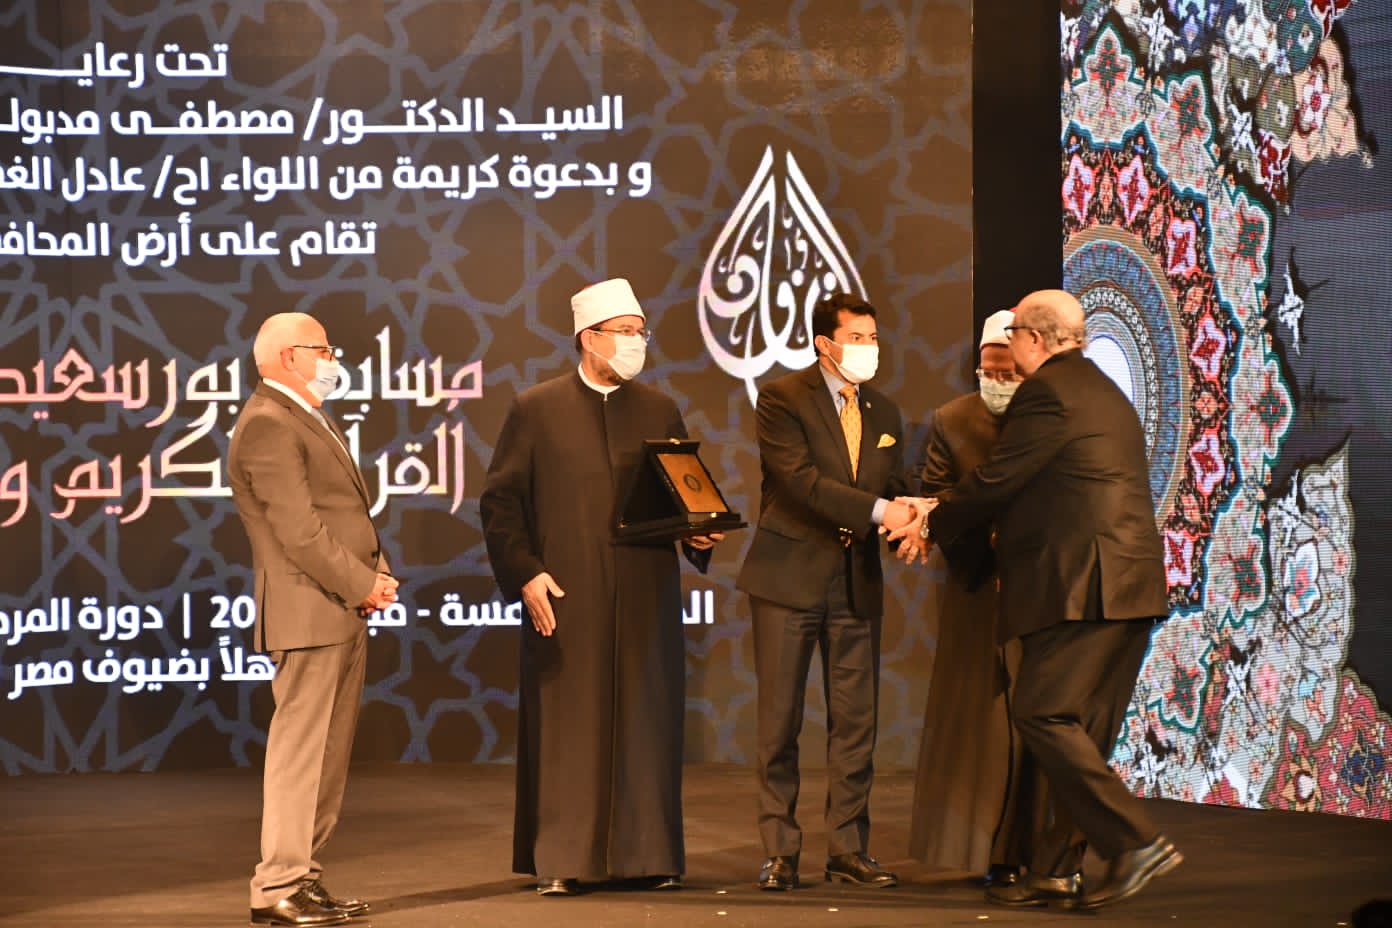  مسابقة بورسعيد الدولية لحفظ القرآن (1)